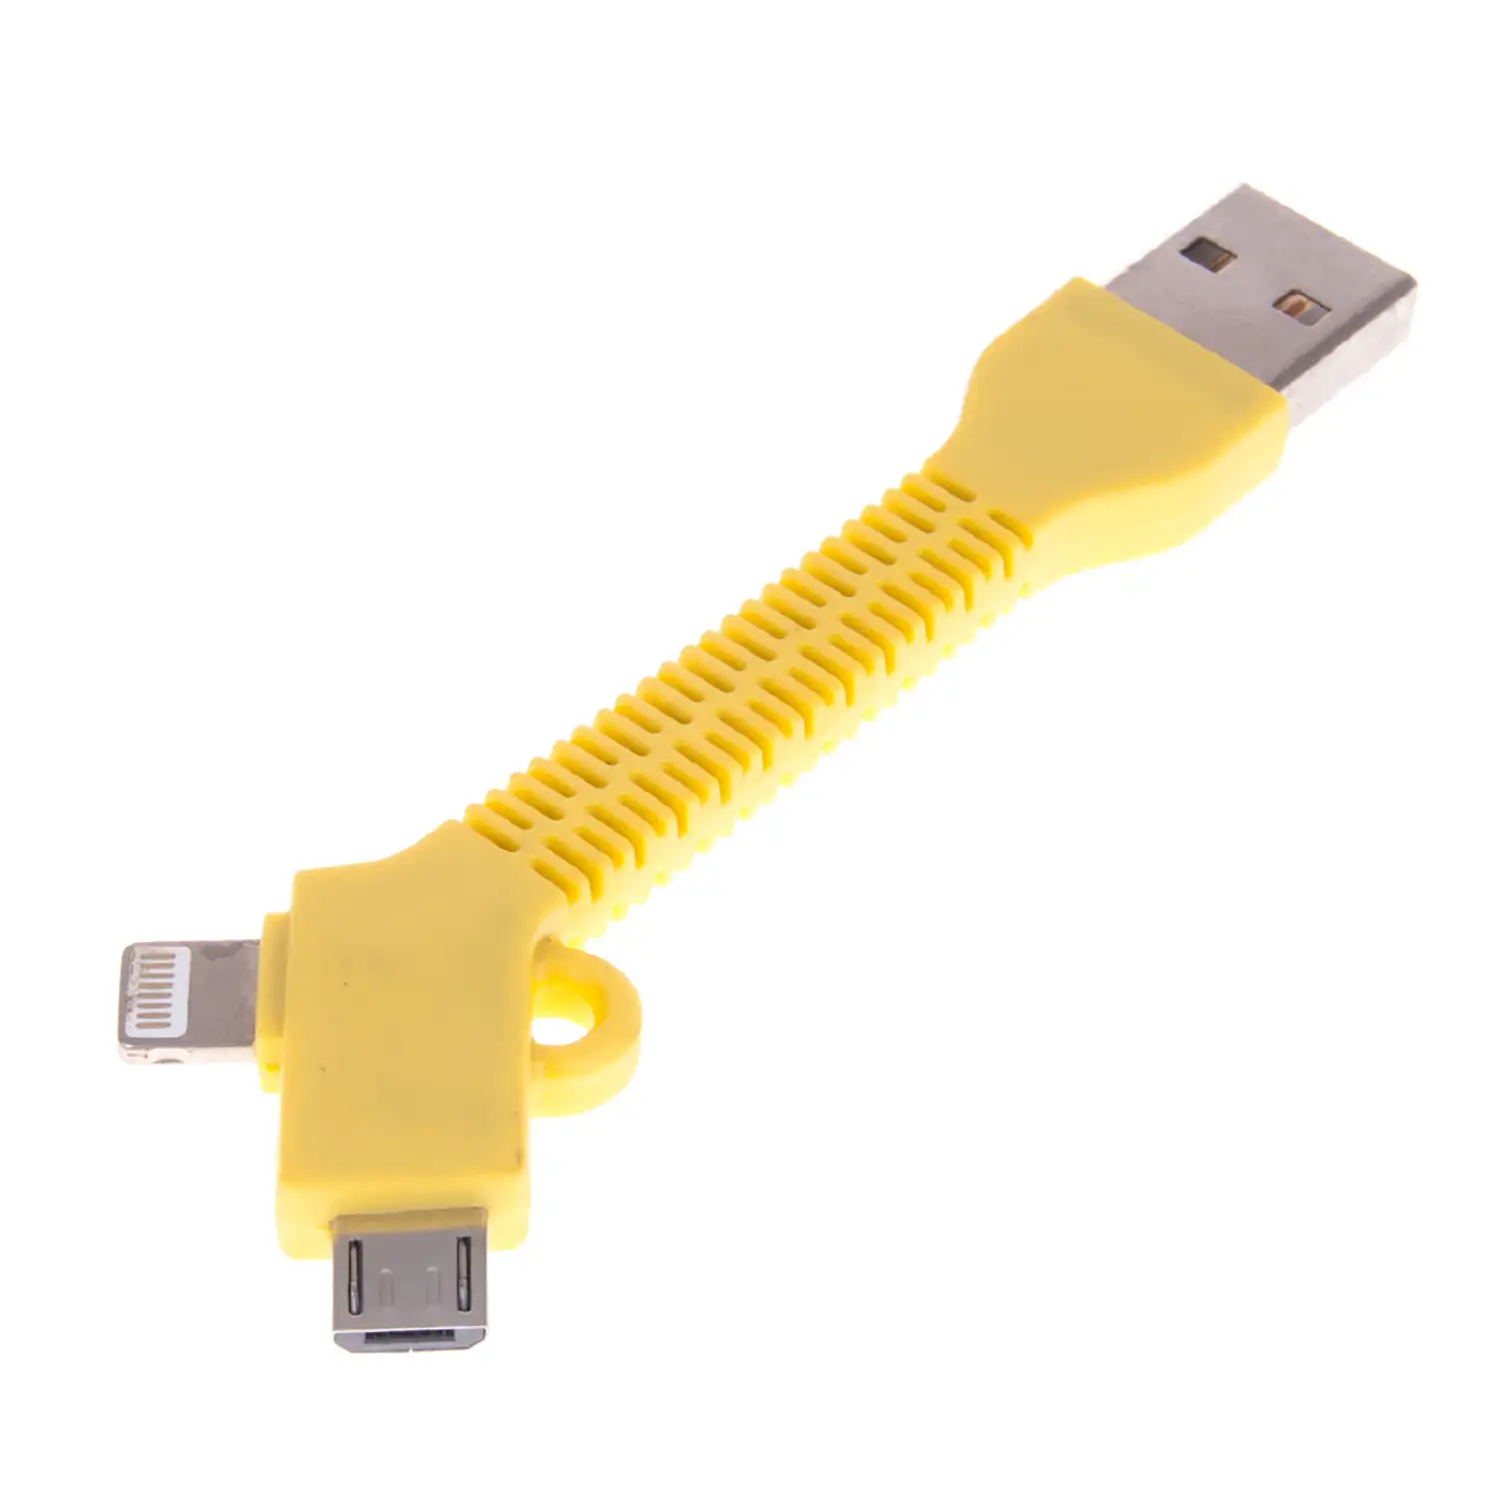 CONECTOR 2 EN 1 SEMIRÍGIDO IP5/6 Y MICRO USB